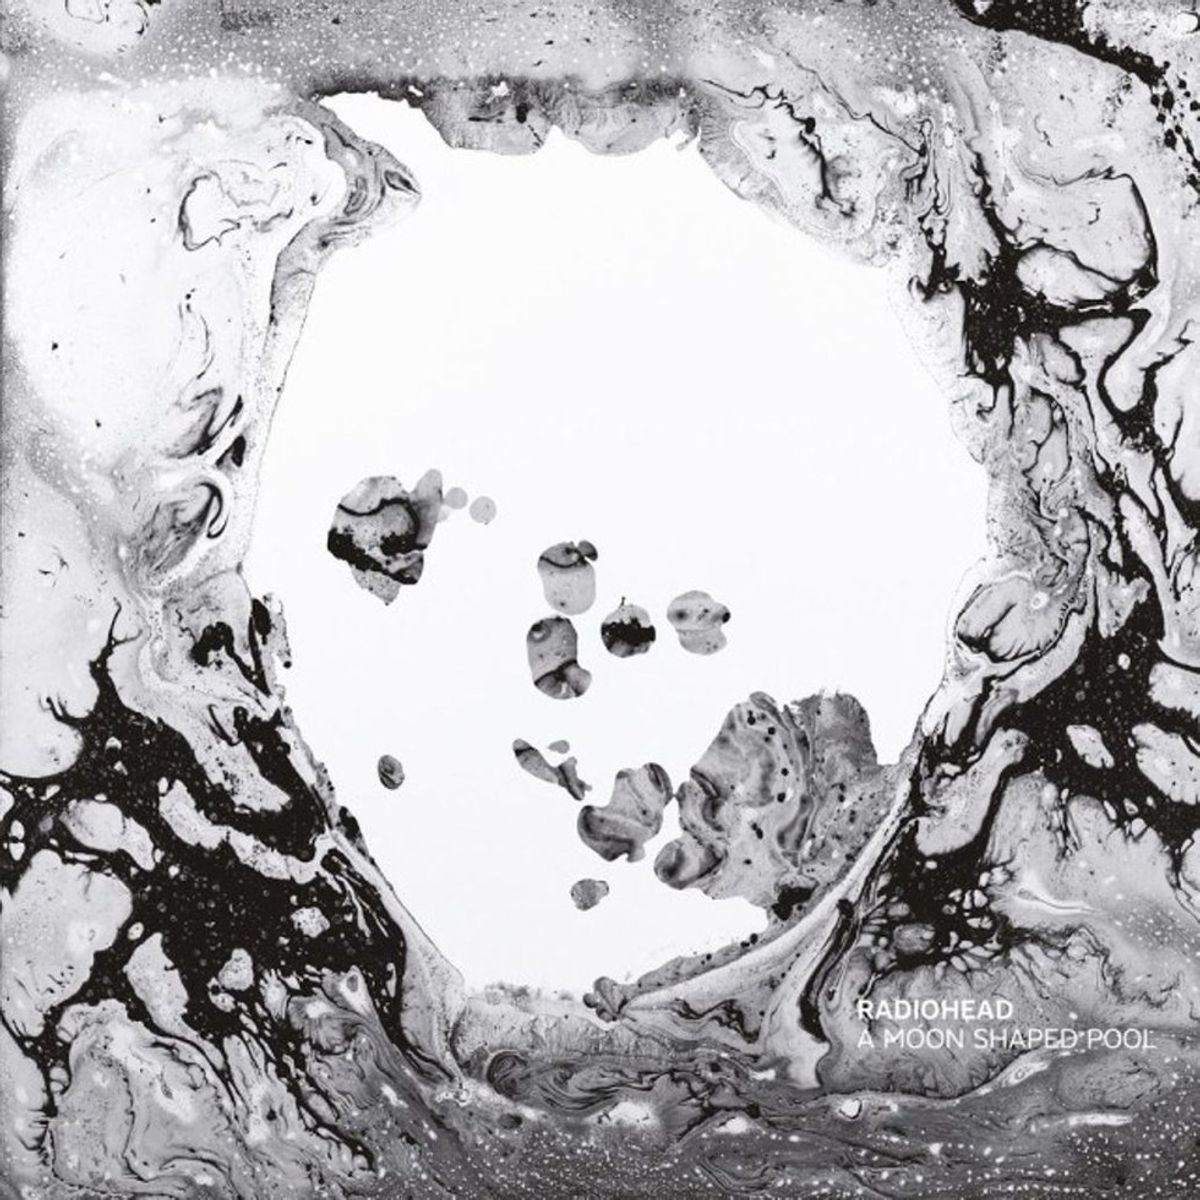 Album Review: Radiohead, 'A Moon Shaped Pool'